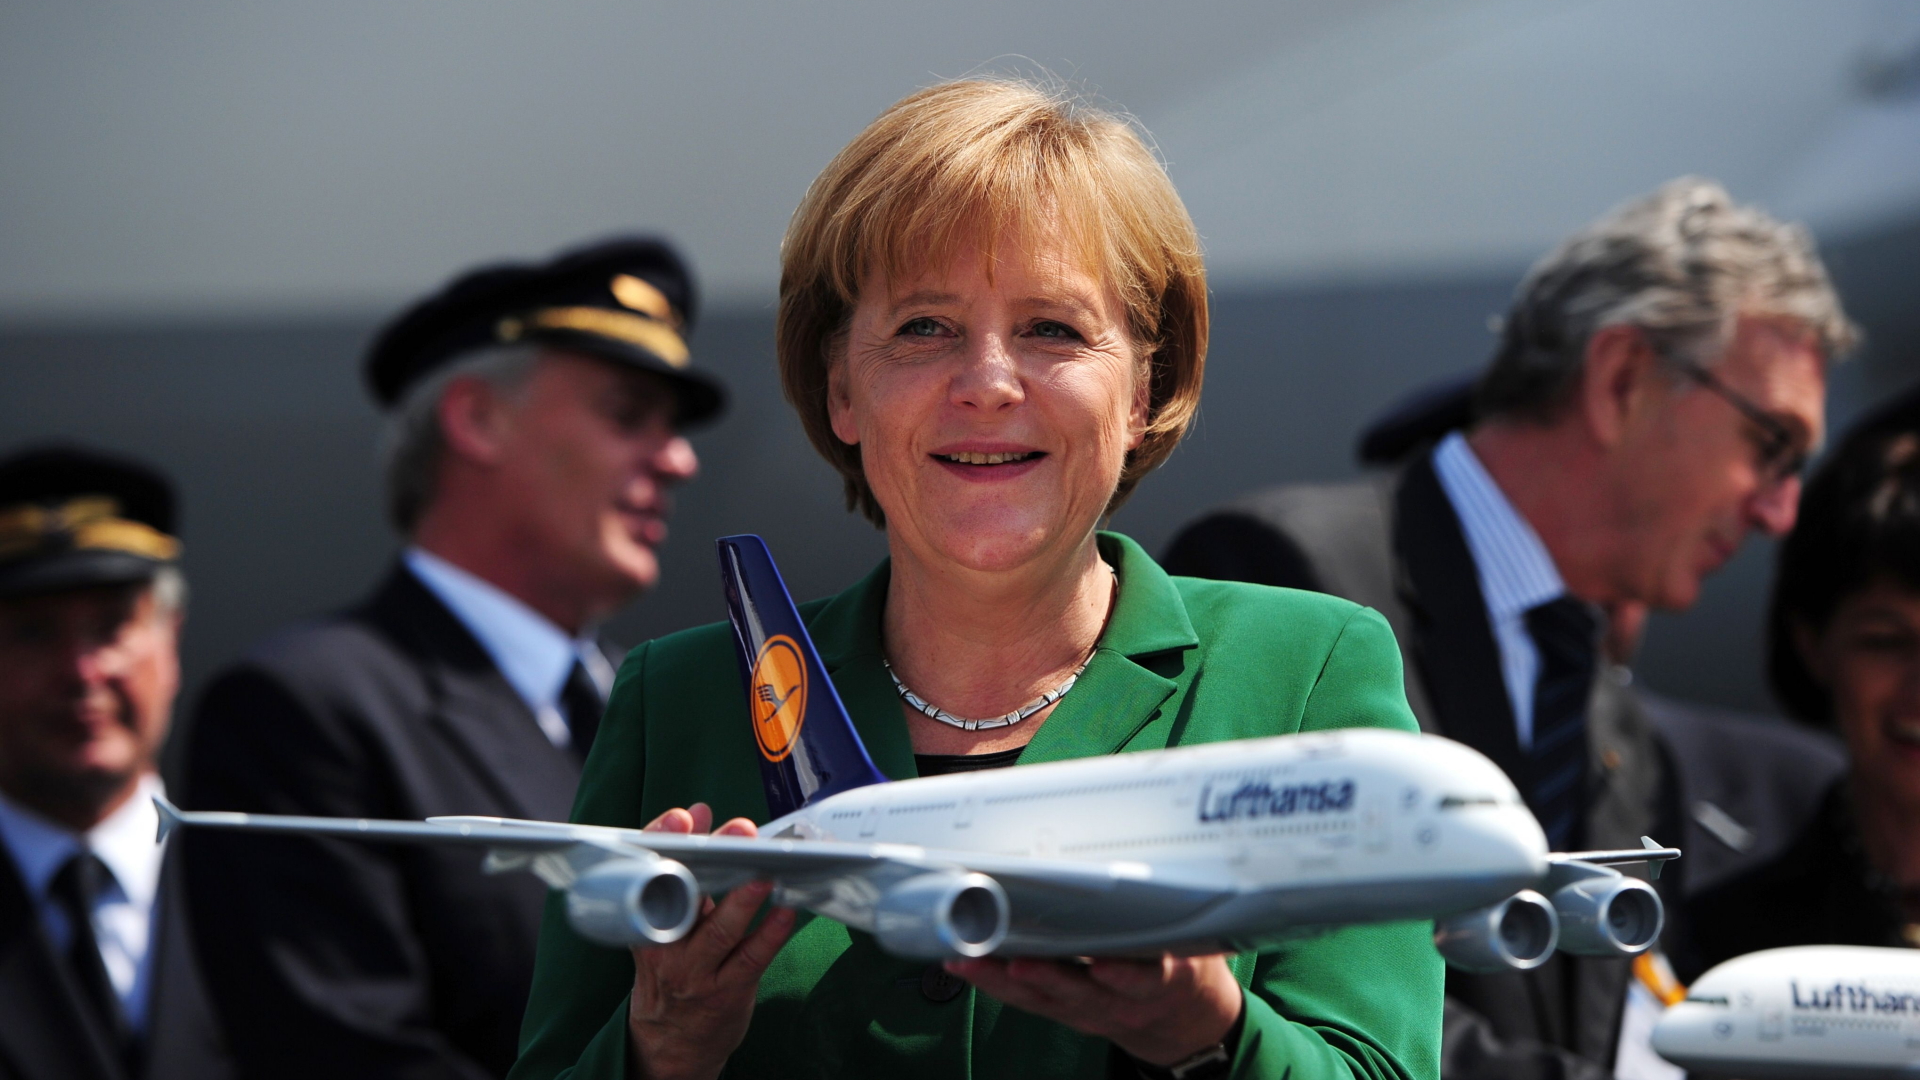 Bundeskanzlerin Angela Merkel mit einem Modell des Airbus A380 in den Händen (Bild von 2010). | AFP